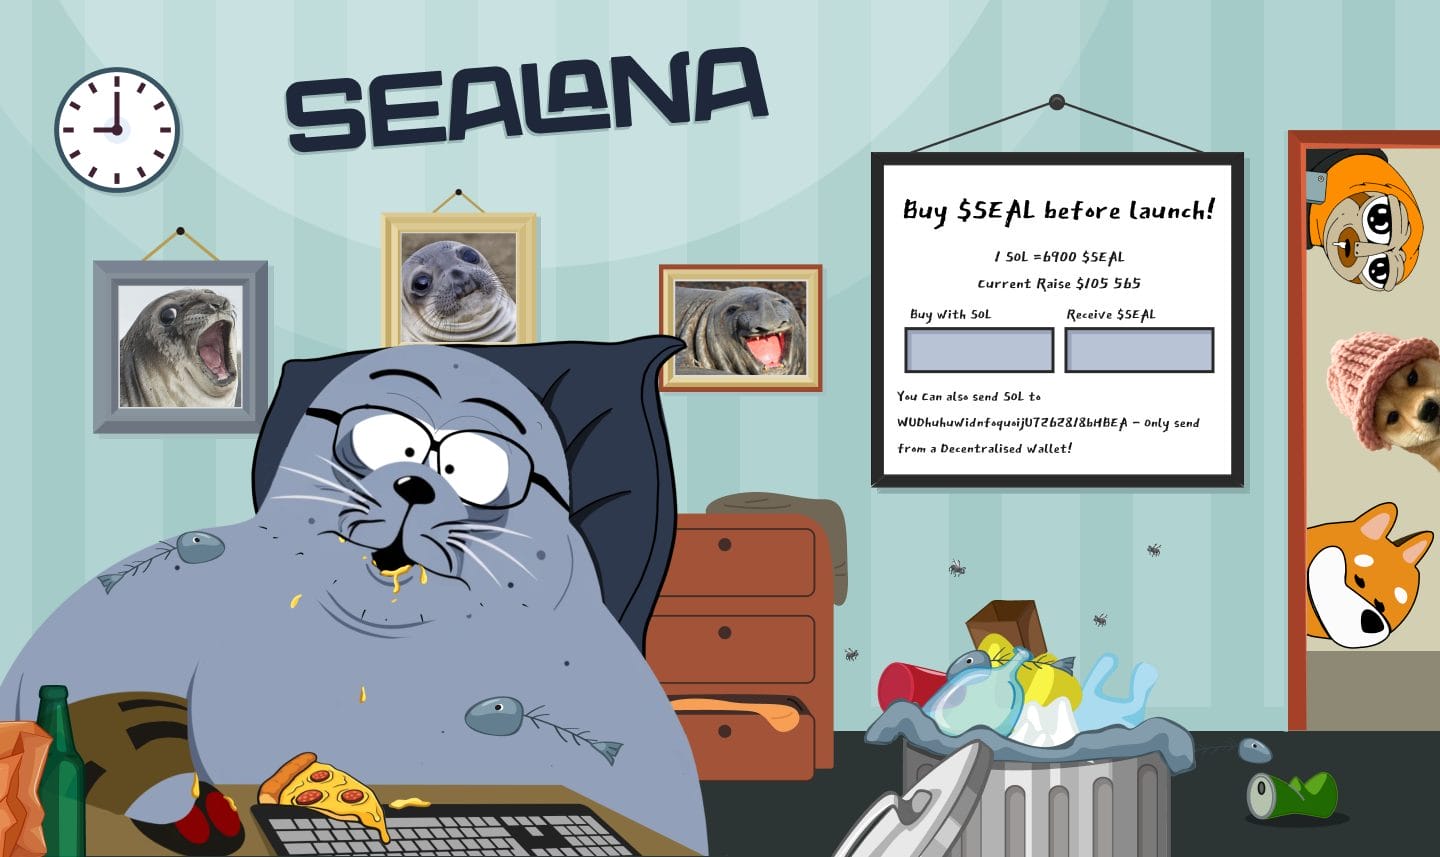 Une capture d'écran de la page d'accueil de Sealana.